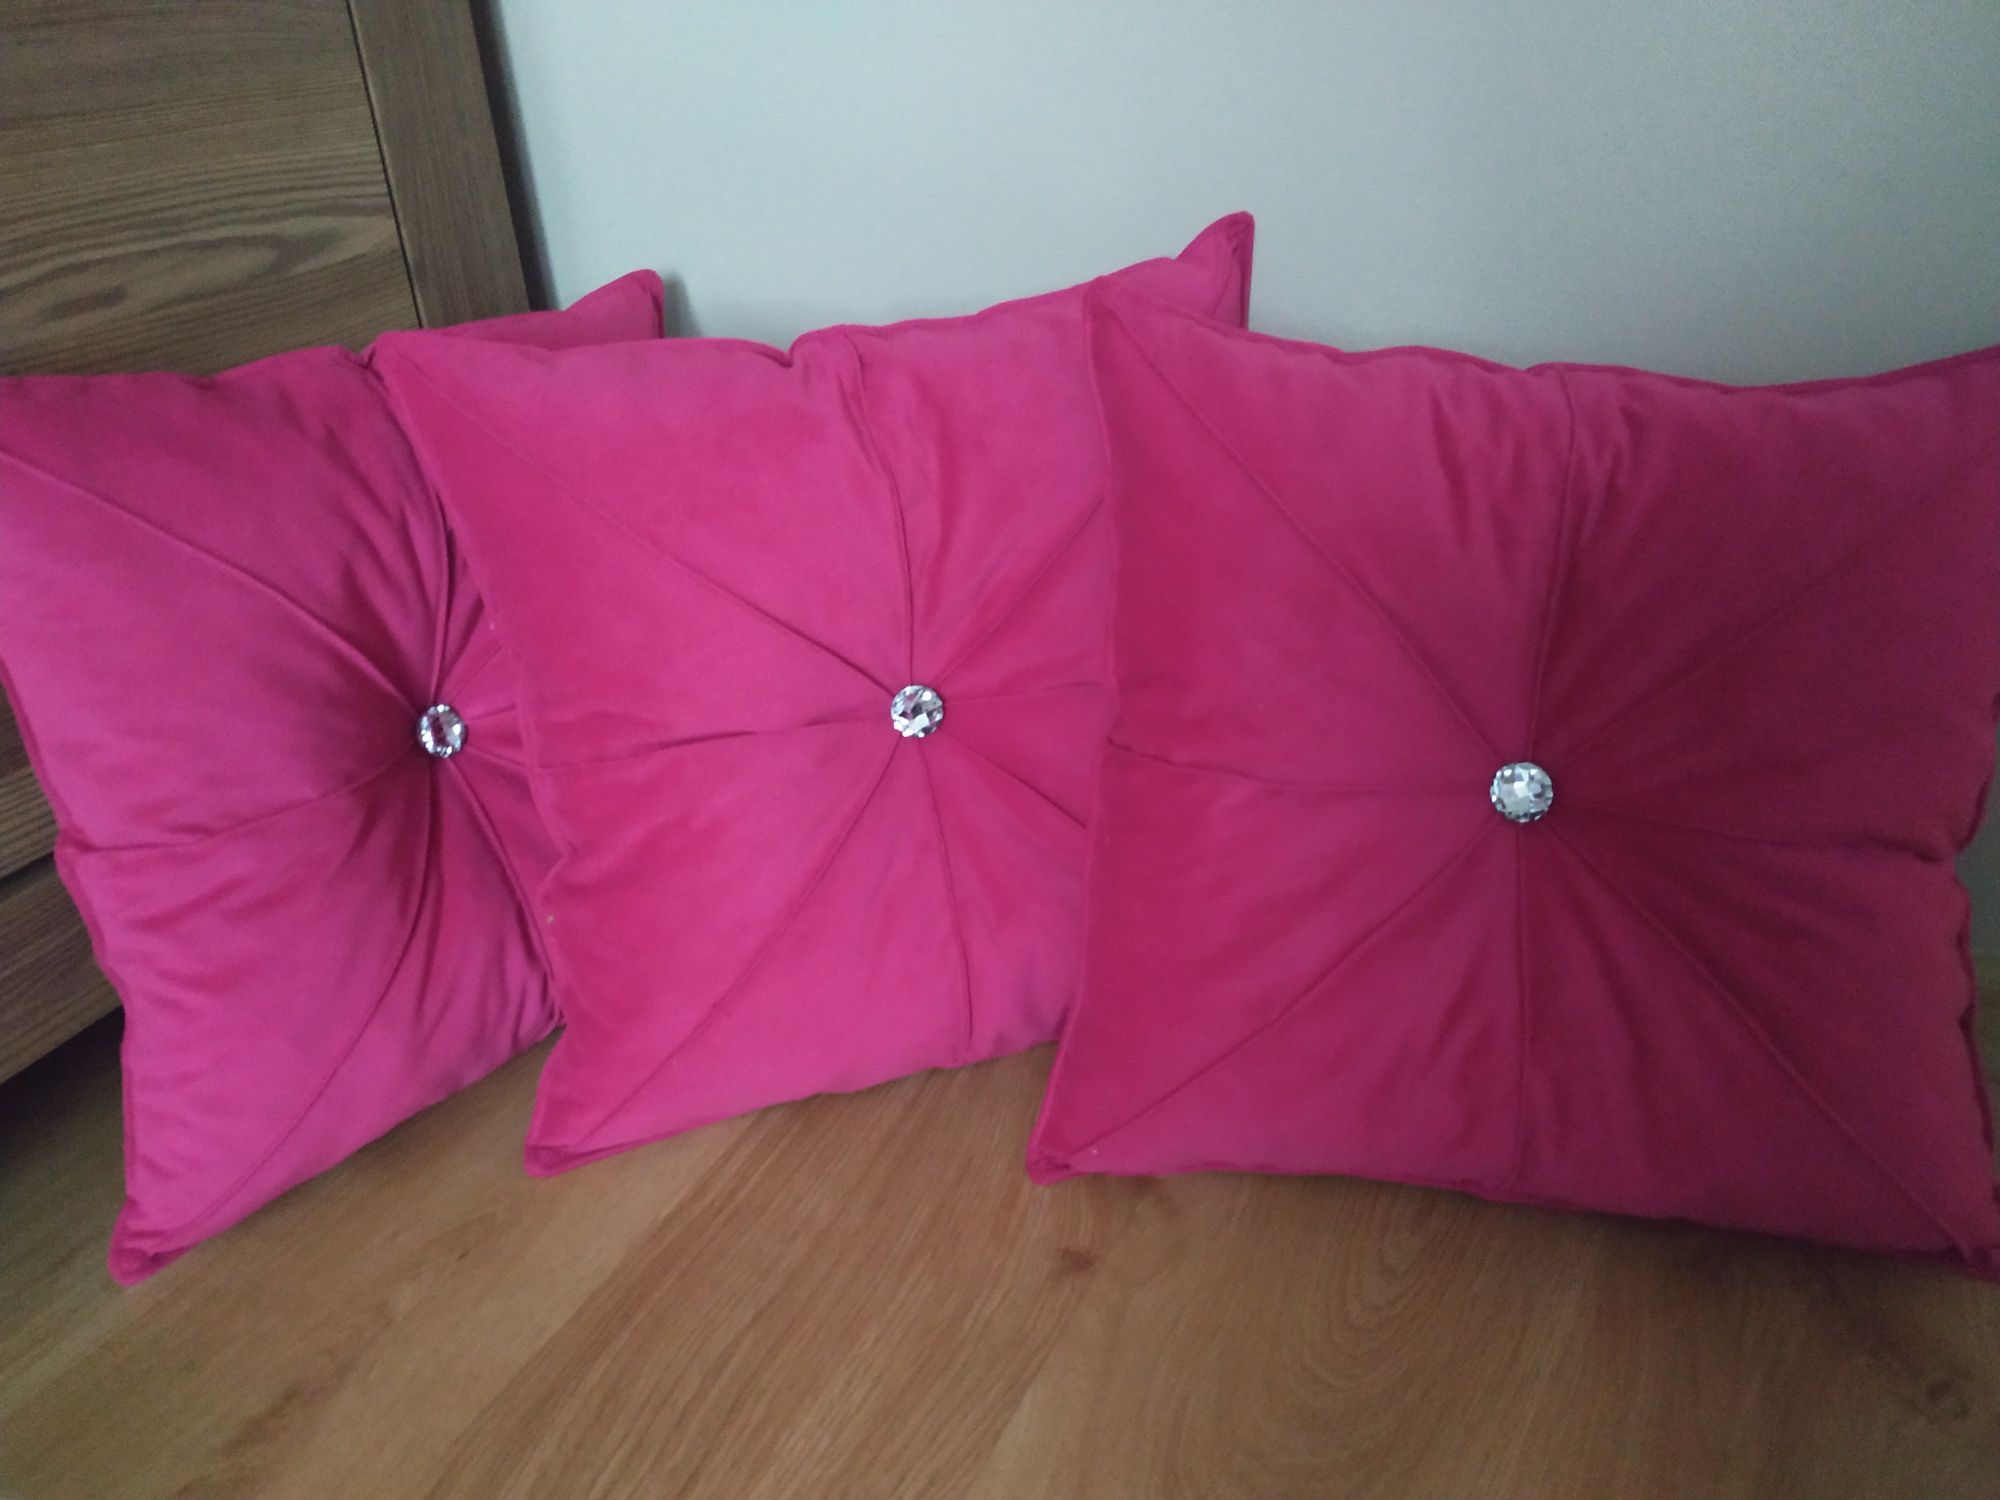 Poduszki dekoracyjne w kolorze fuksji